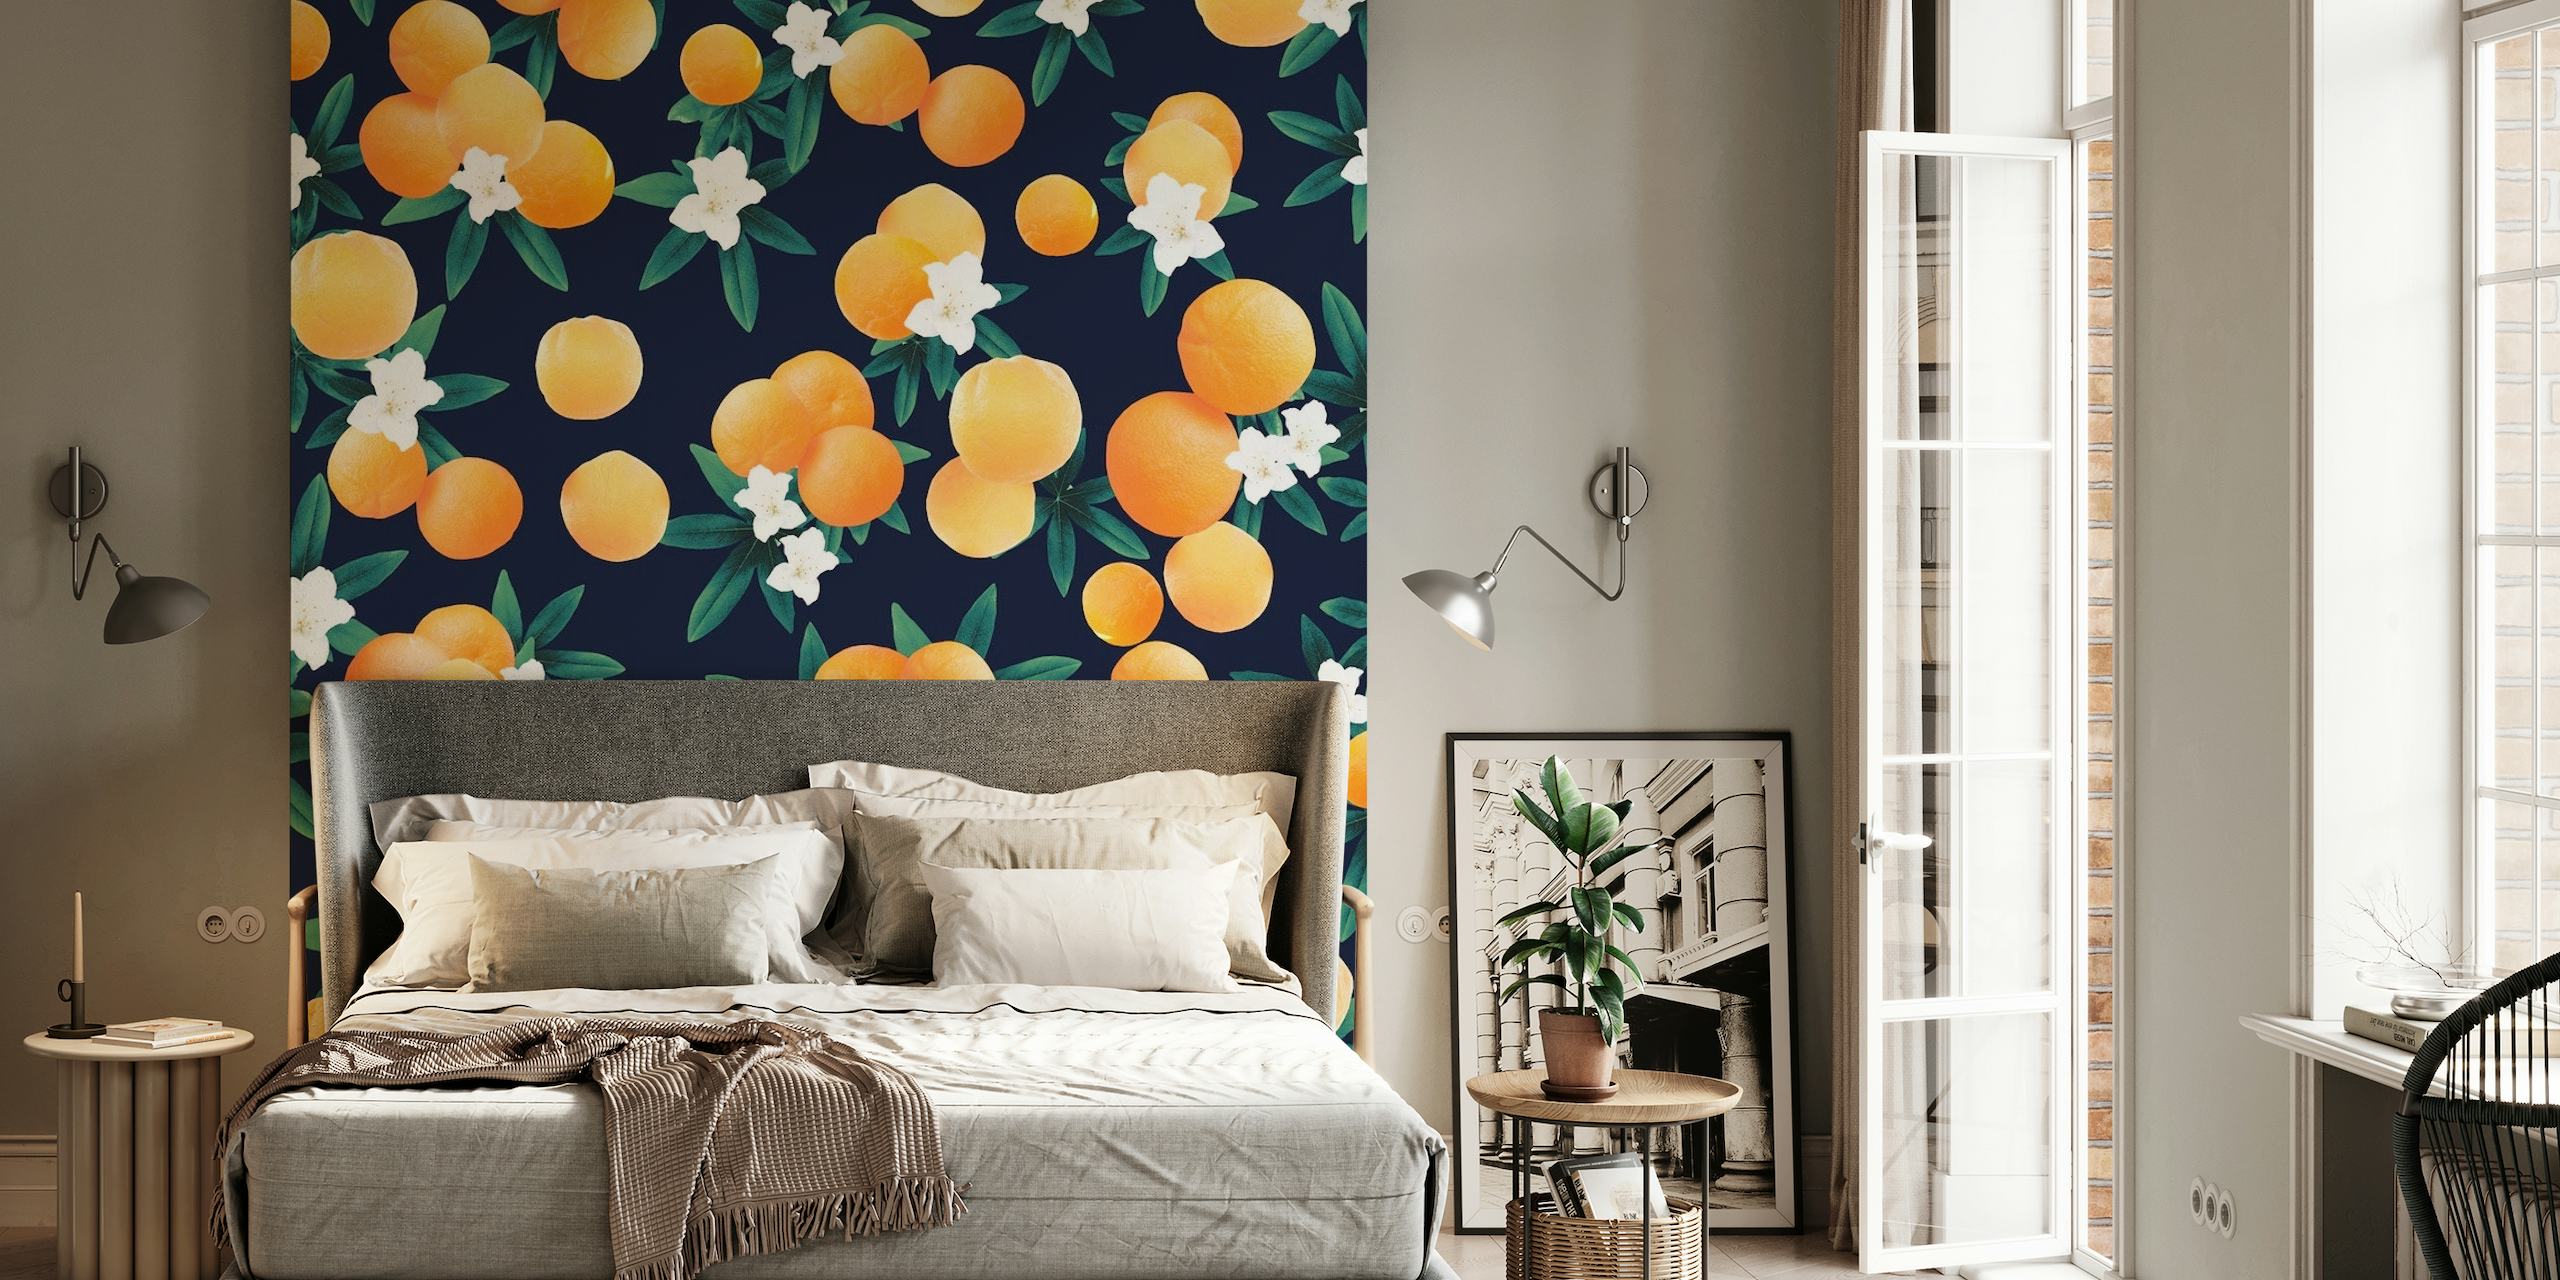 Vægmaleri med lys orange citrusfrugter og hvide blomster mod en mørkeblå baggrund.